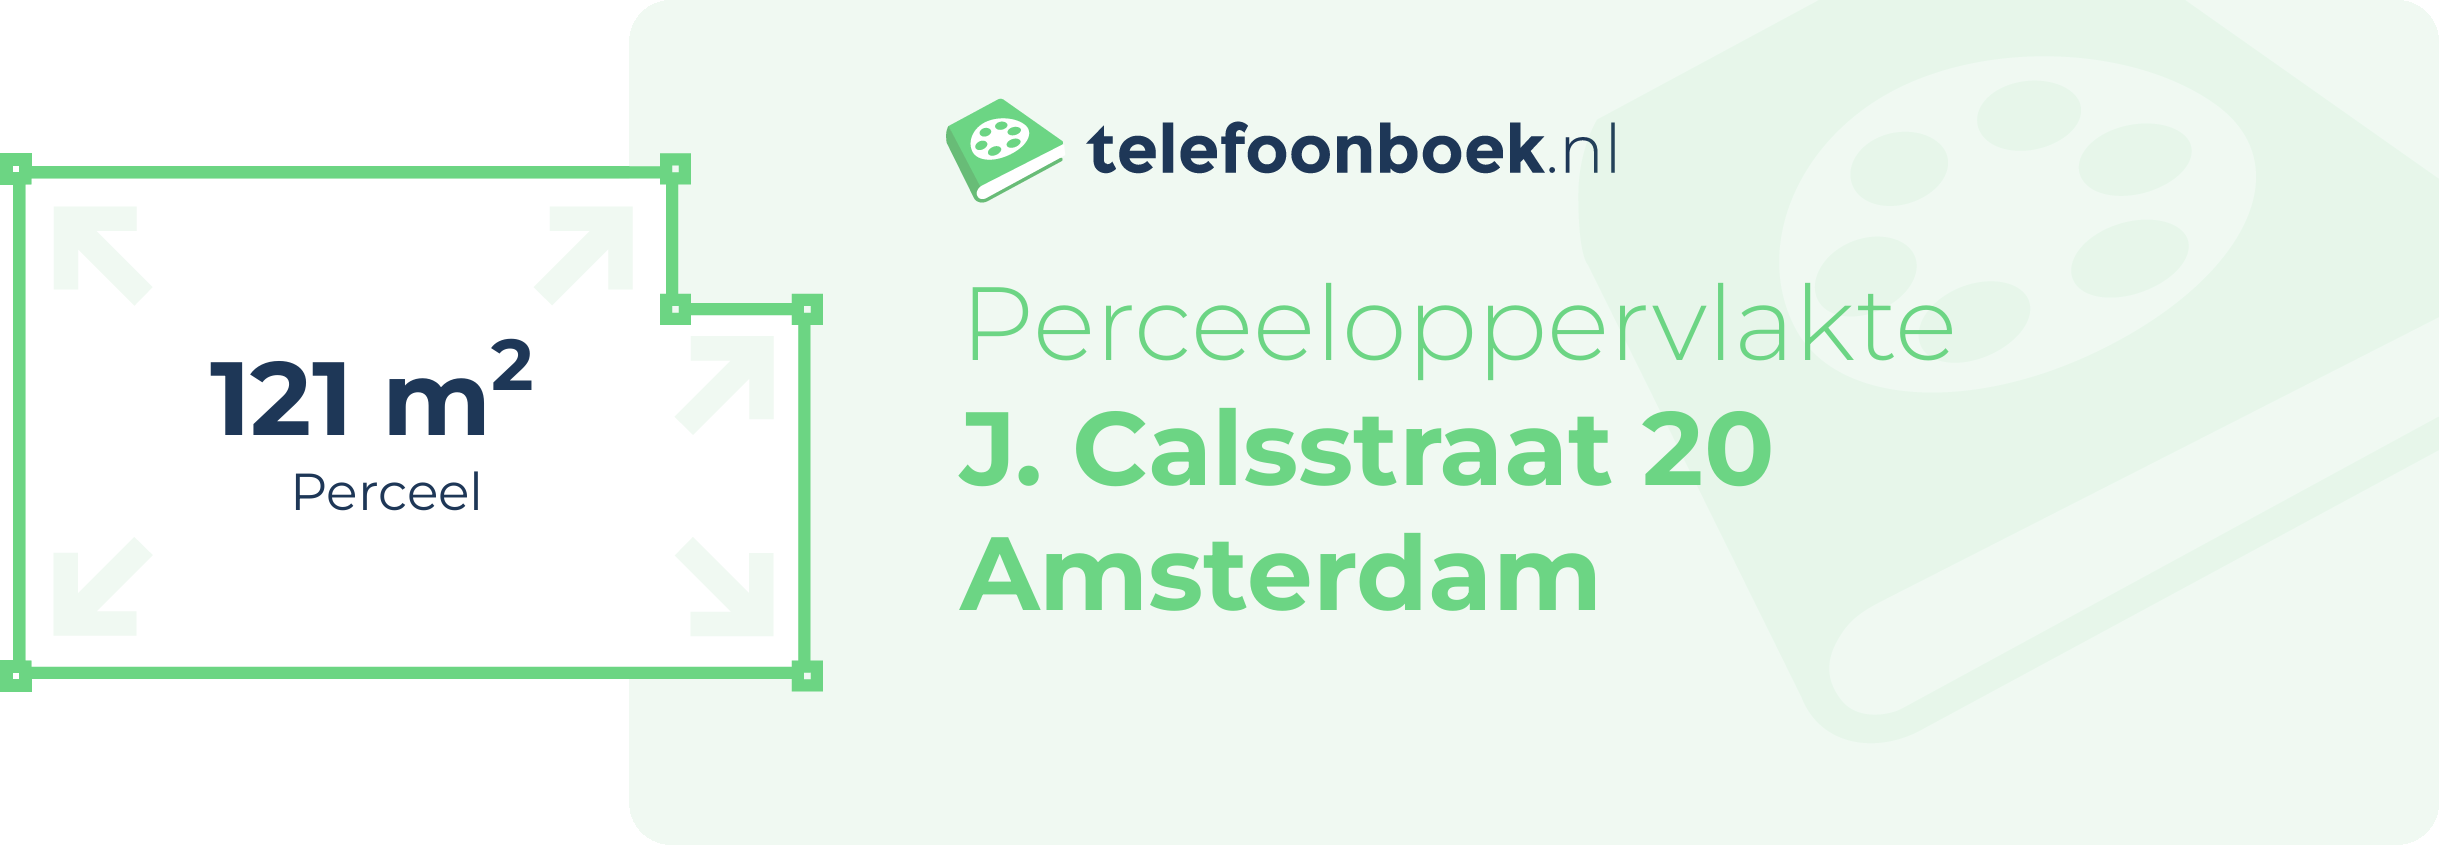 Perceeloppervlakte J. Calsstraat 20 Amsterdam